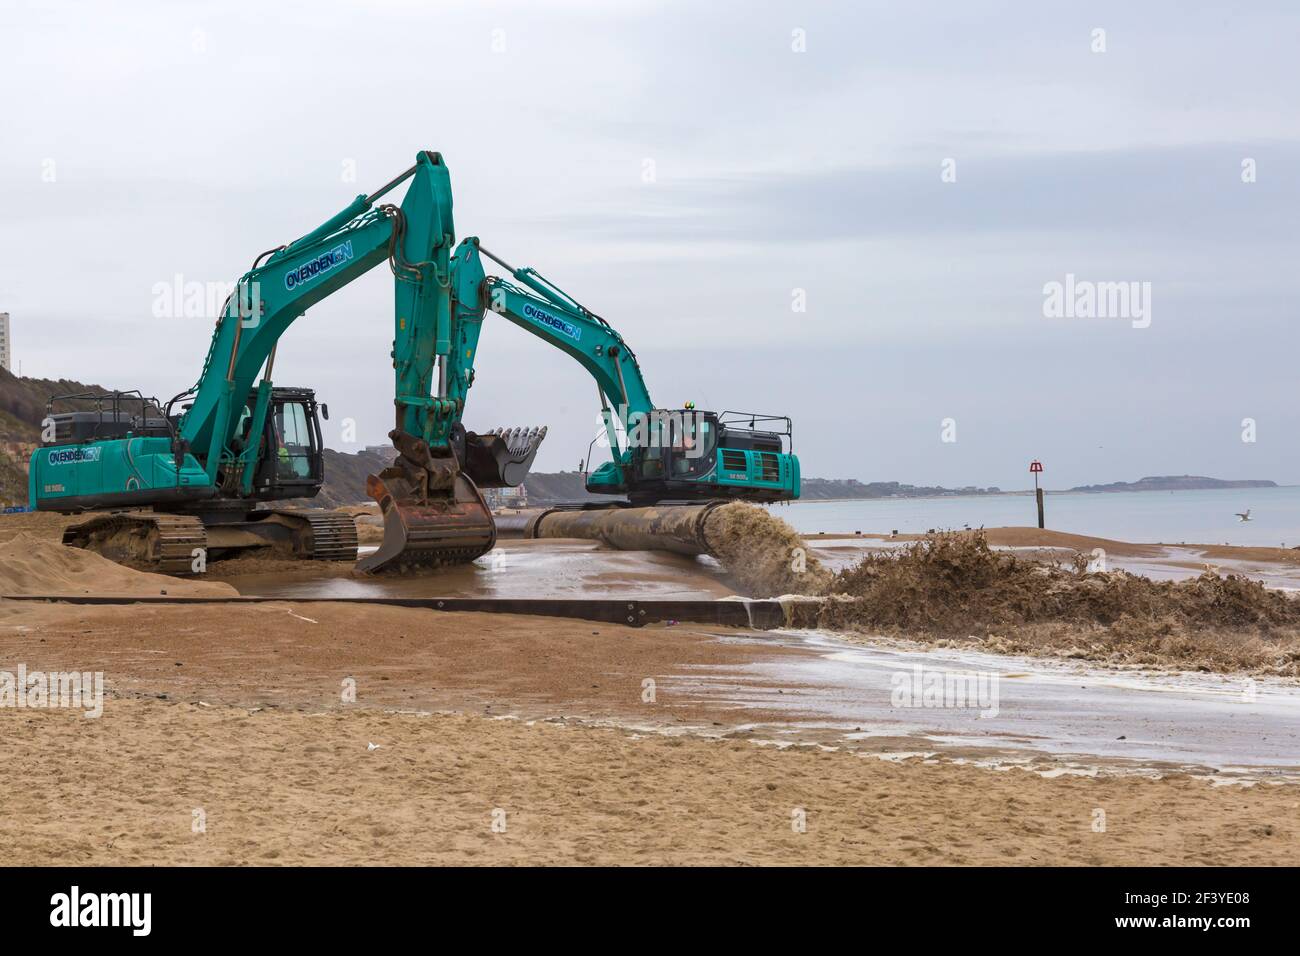 Bournemouth, Dorset, Großbritannien. März 2021, 18th. Am Strand von Bournemouth wird der Sand von einem Bagger durch Rohre aus dem Meer auf die Strandküste gepumpt. Mit mehr Menschen wahrscheinlich zu bleiben in diesem Jahr und Urlaub in Bournemouth die goldenen Sandstrände sind Teil der Attraktion. Ovenden SK500 Bagger - Wasser und Sand werden ausgepumpt und sprudeln. Quelle: Carolyn Jenkins/Alamy Live News Stockfoto